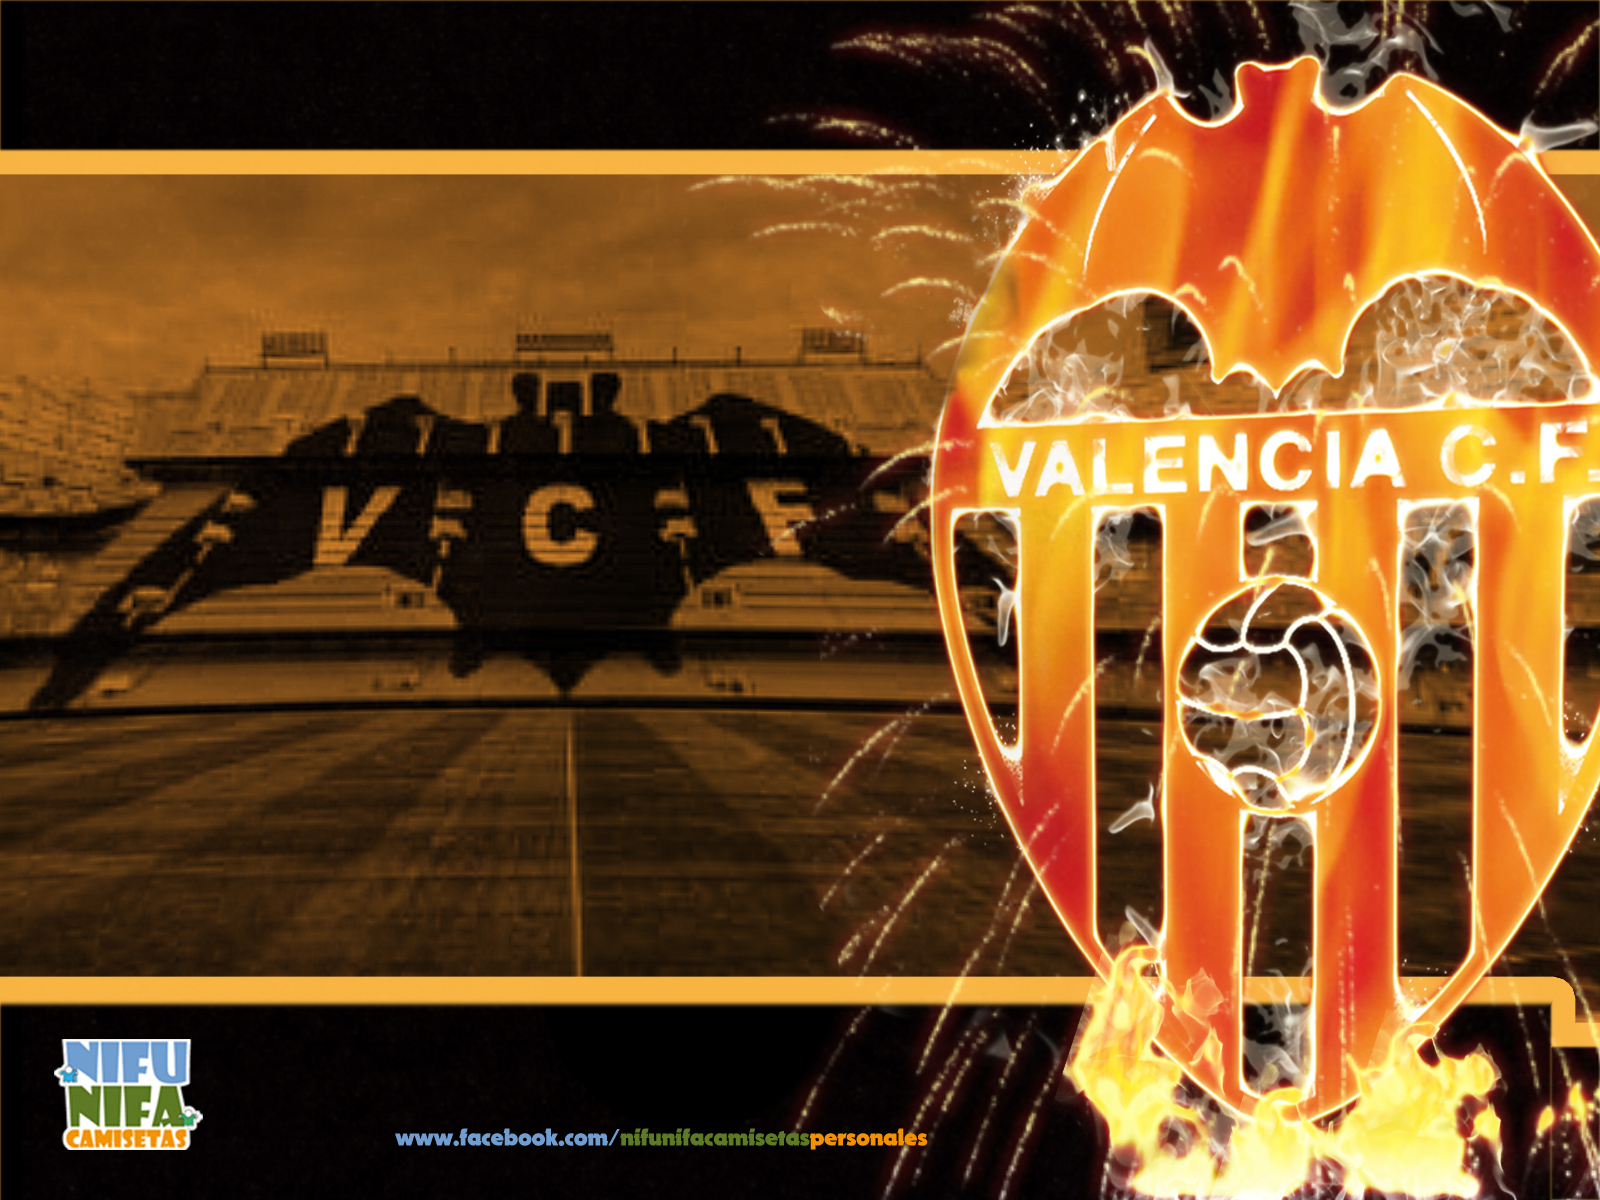 Valencia Cf Wallpapers La Red Social De Aficionados , HD Wallpaper & Backgrounds